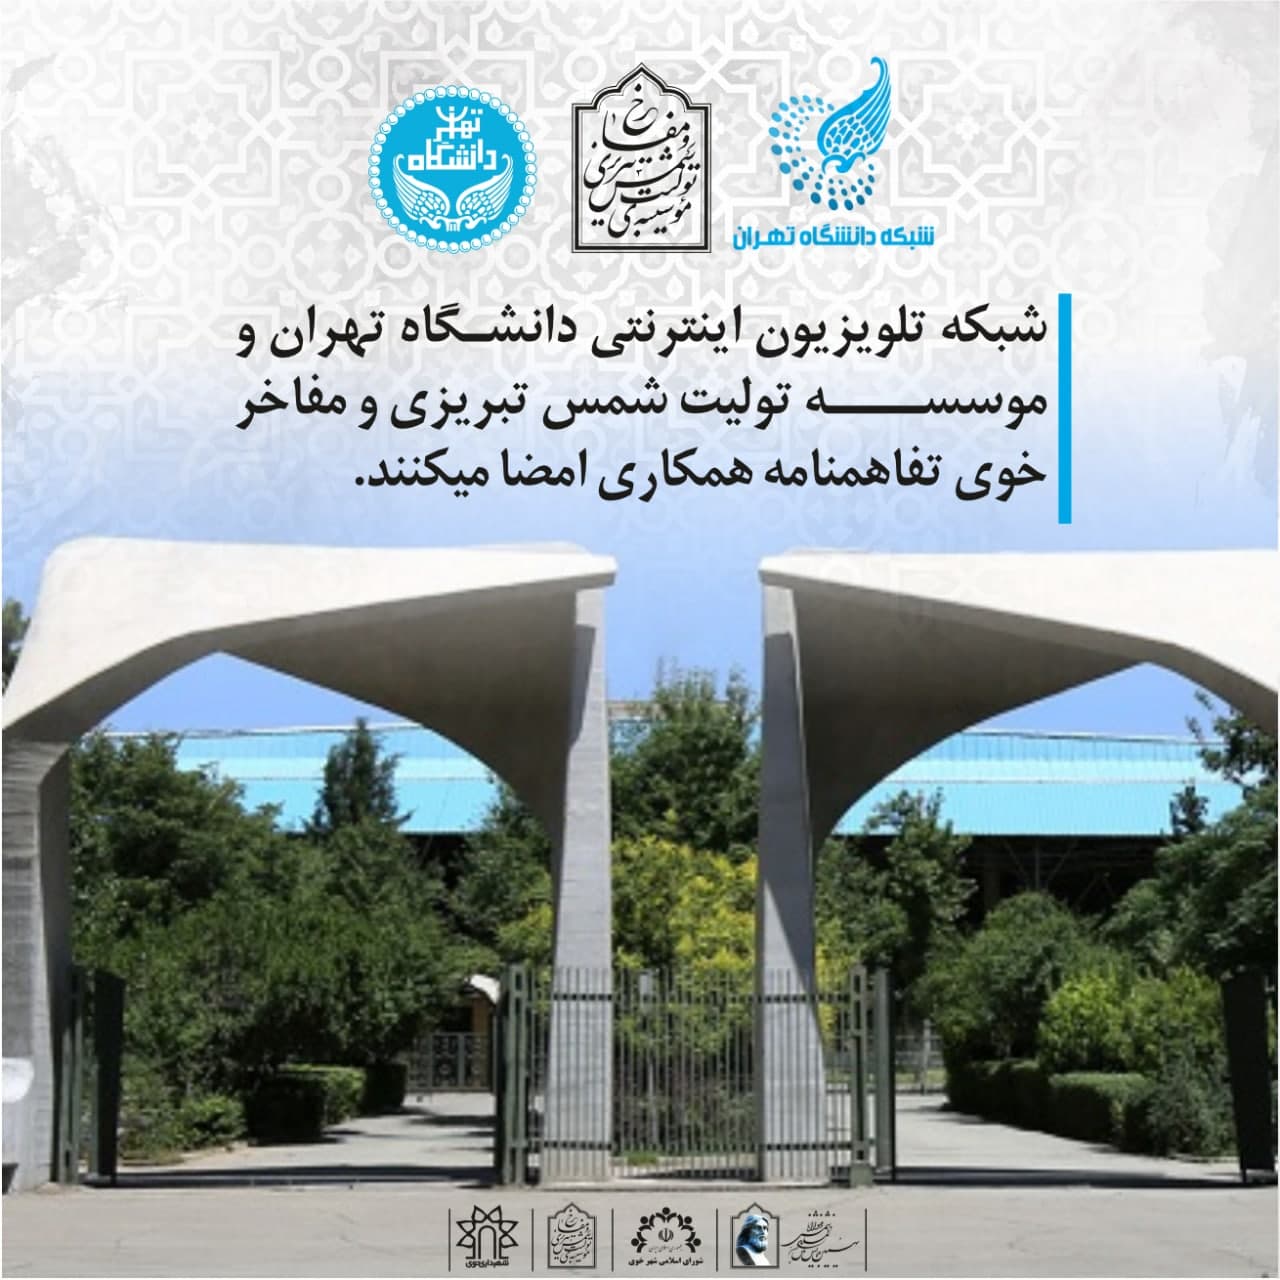 شبکه تلویزیون اینترنتی دانشگاه تهران و موسسه تولیت شمس تبریزی و مفاخر خوی تفاهمنامه همکاری امضا میکنند.